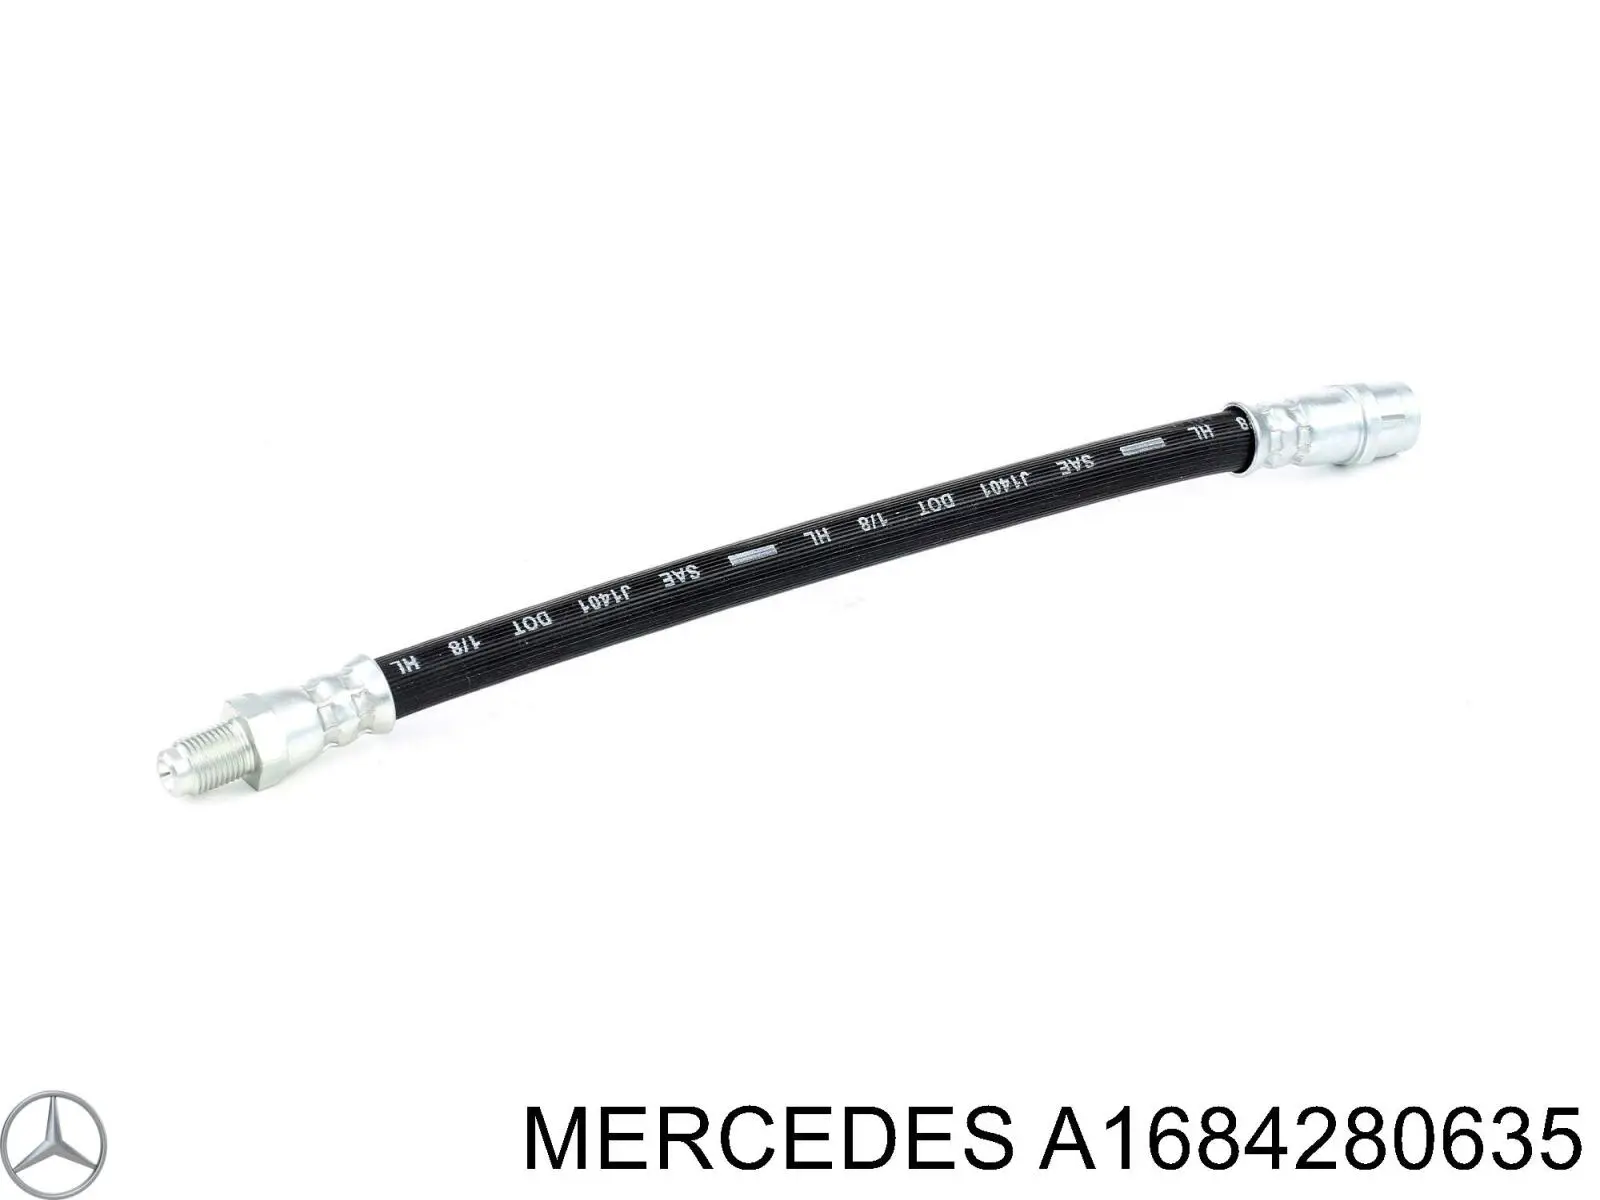 A1684280635 Mercedes шланг тормозной задний